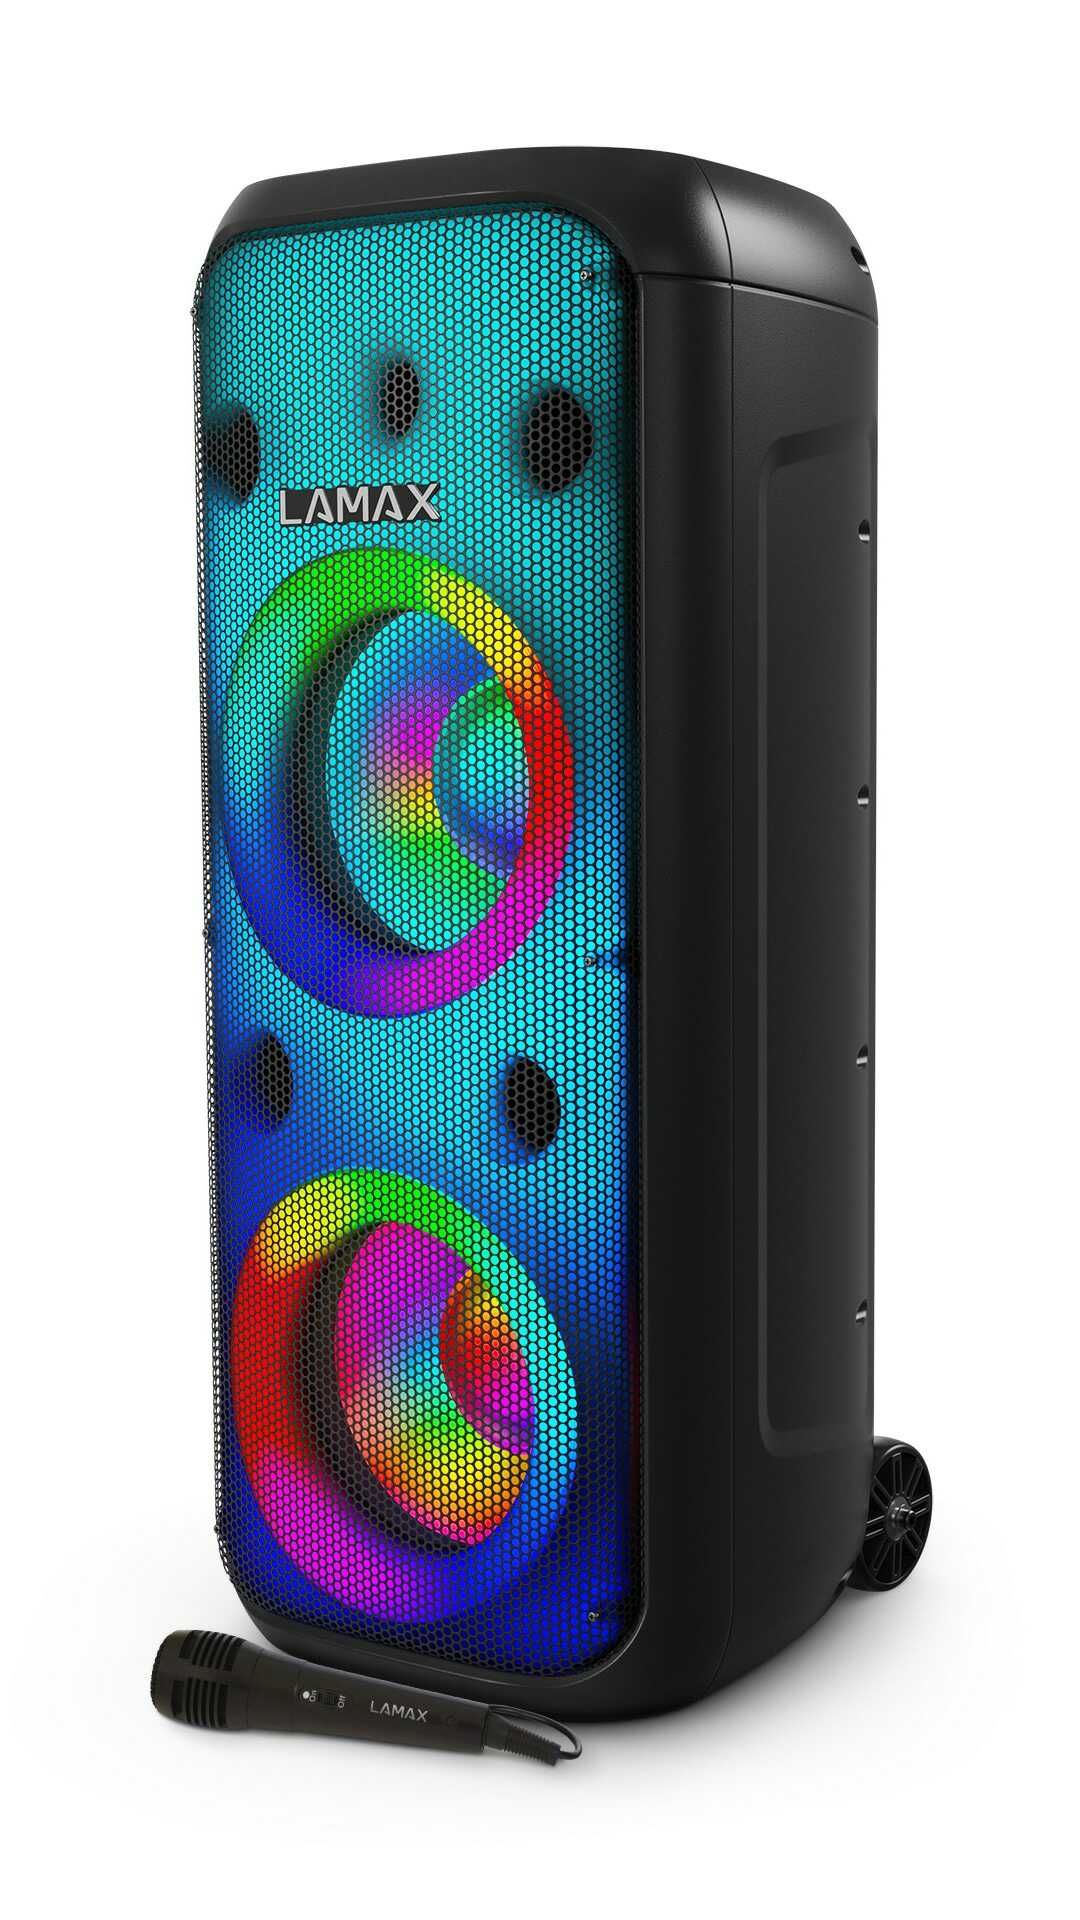  partyreproduktor lamax partyboombox 700 masivní hudební výkon senzační zvuk světelná show baterie odolnost vodě usb sd slot karaoke